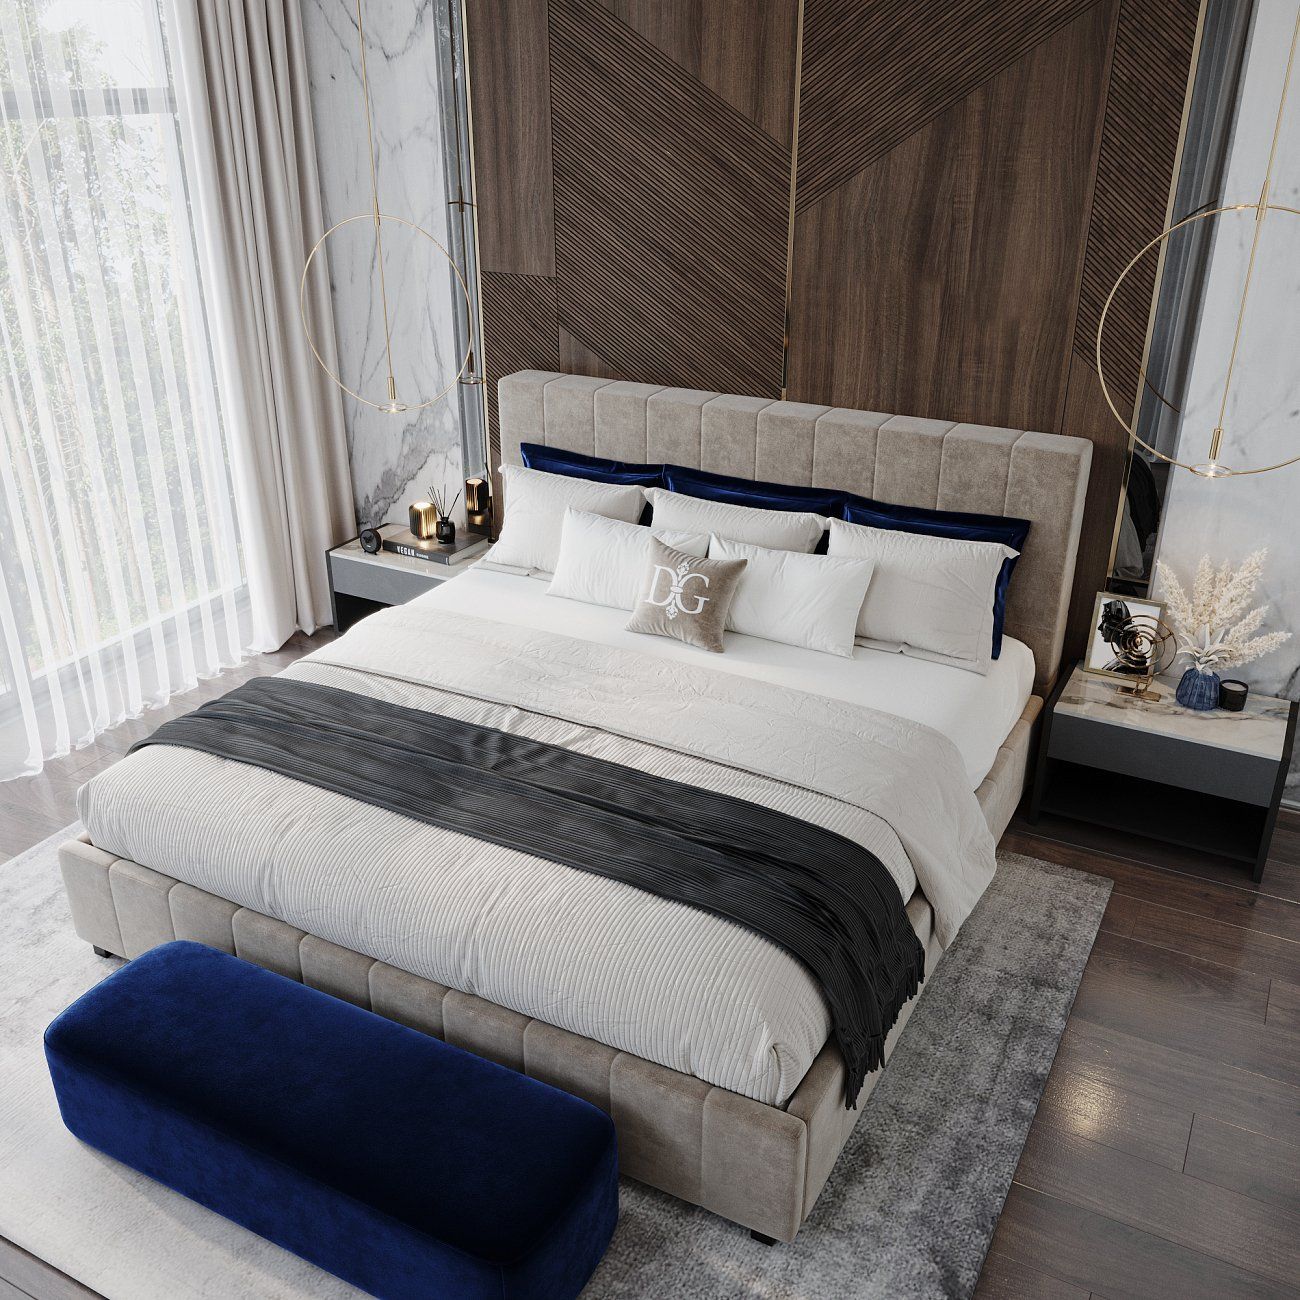 Кровать двуспальная 160х200 см серо-коричневая Shining Modern